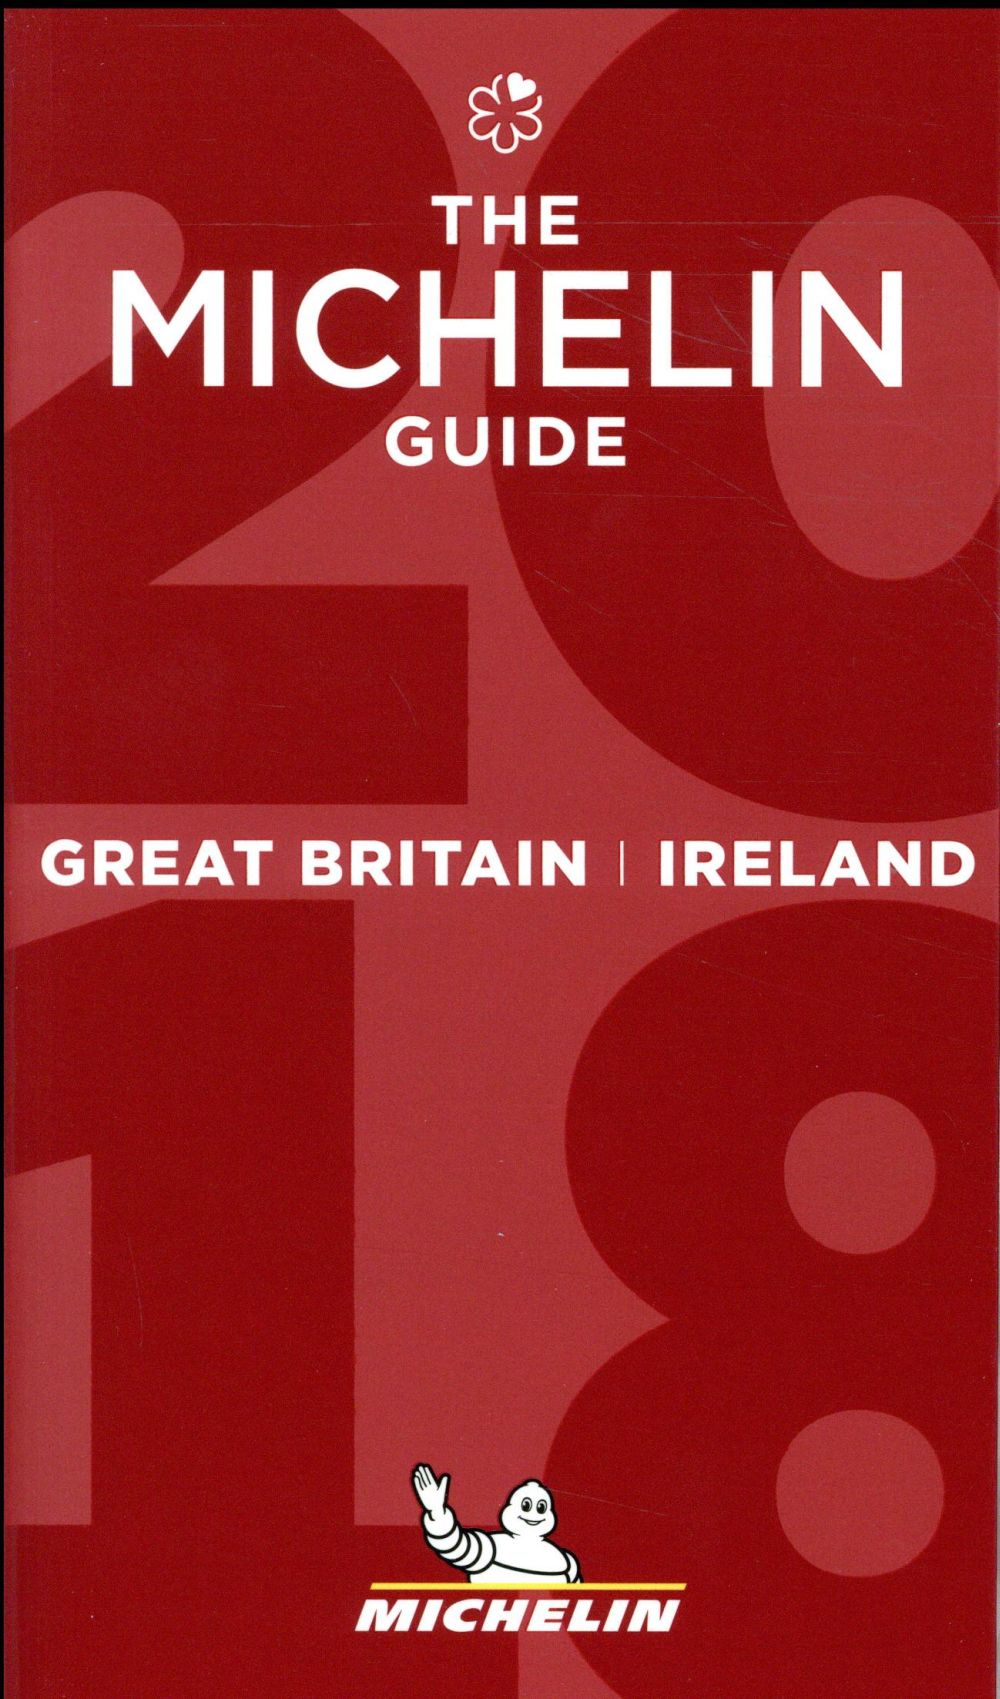 MICHELIN GUIDE GREAT BRITAIN & IRELAND - THE MICHELIN GUIDE 2018